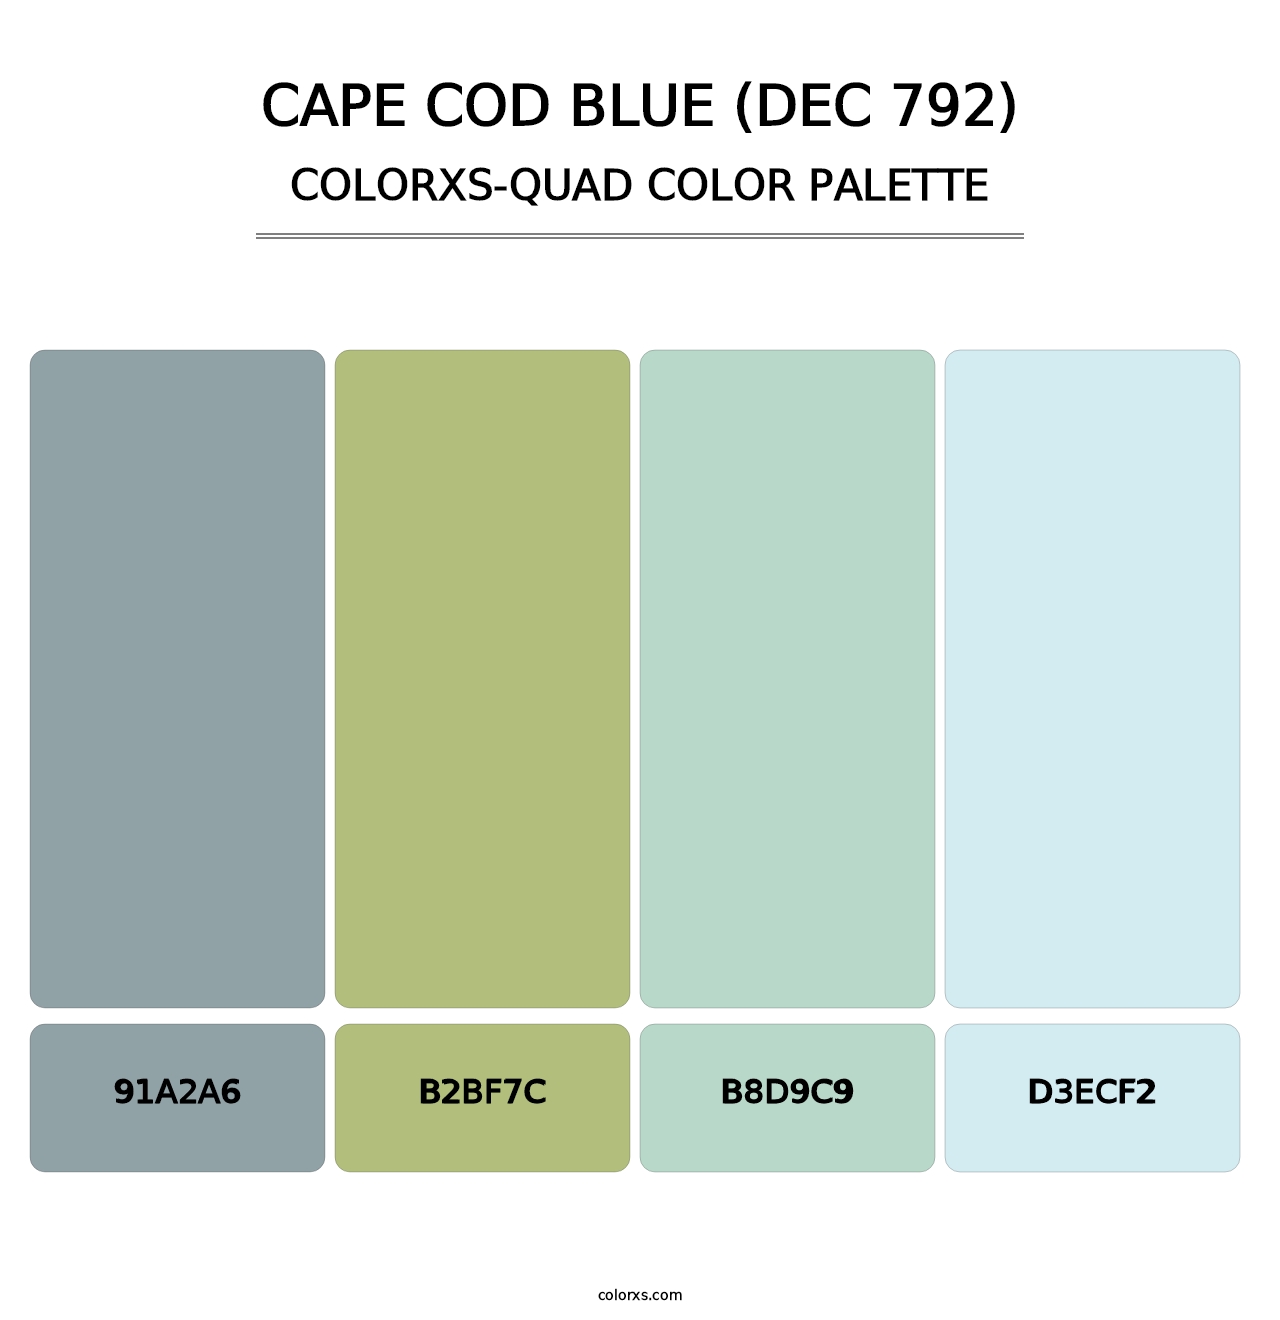 Cape Cod Blue (DEC 792) - Colorxs Quad Palette